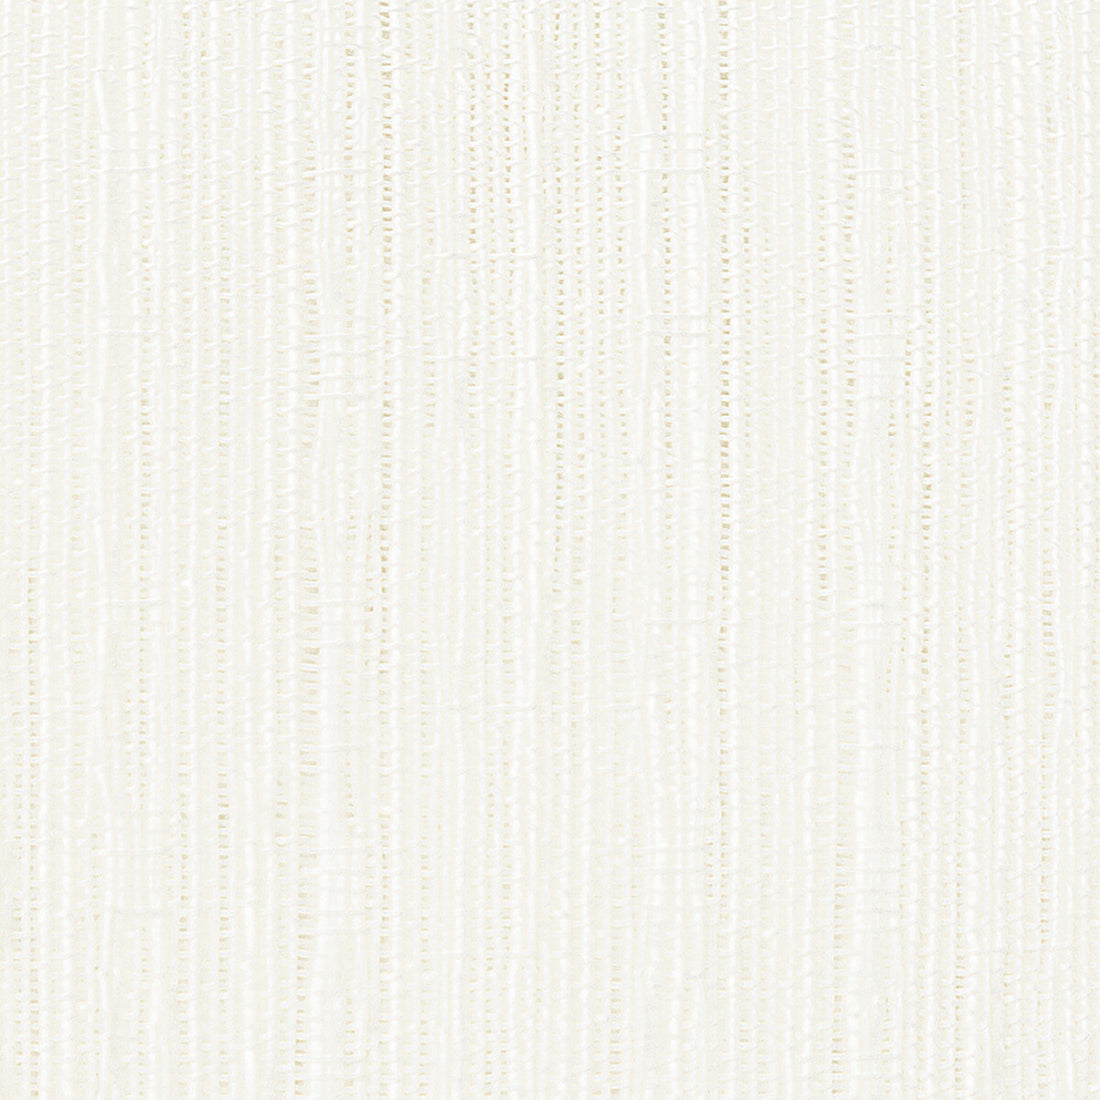 Kravet Basics fabric in 4771-101 color - pattern 4771.101.0 - by Kravet Basics